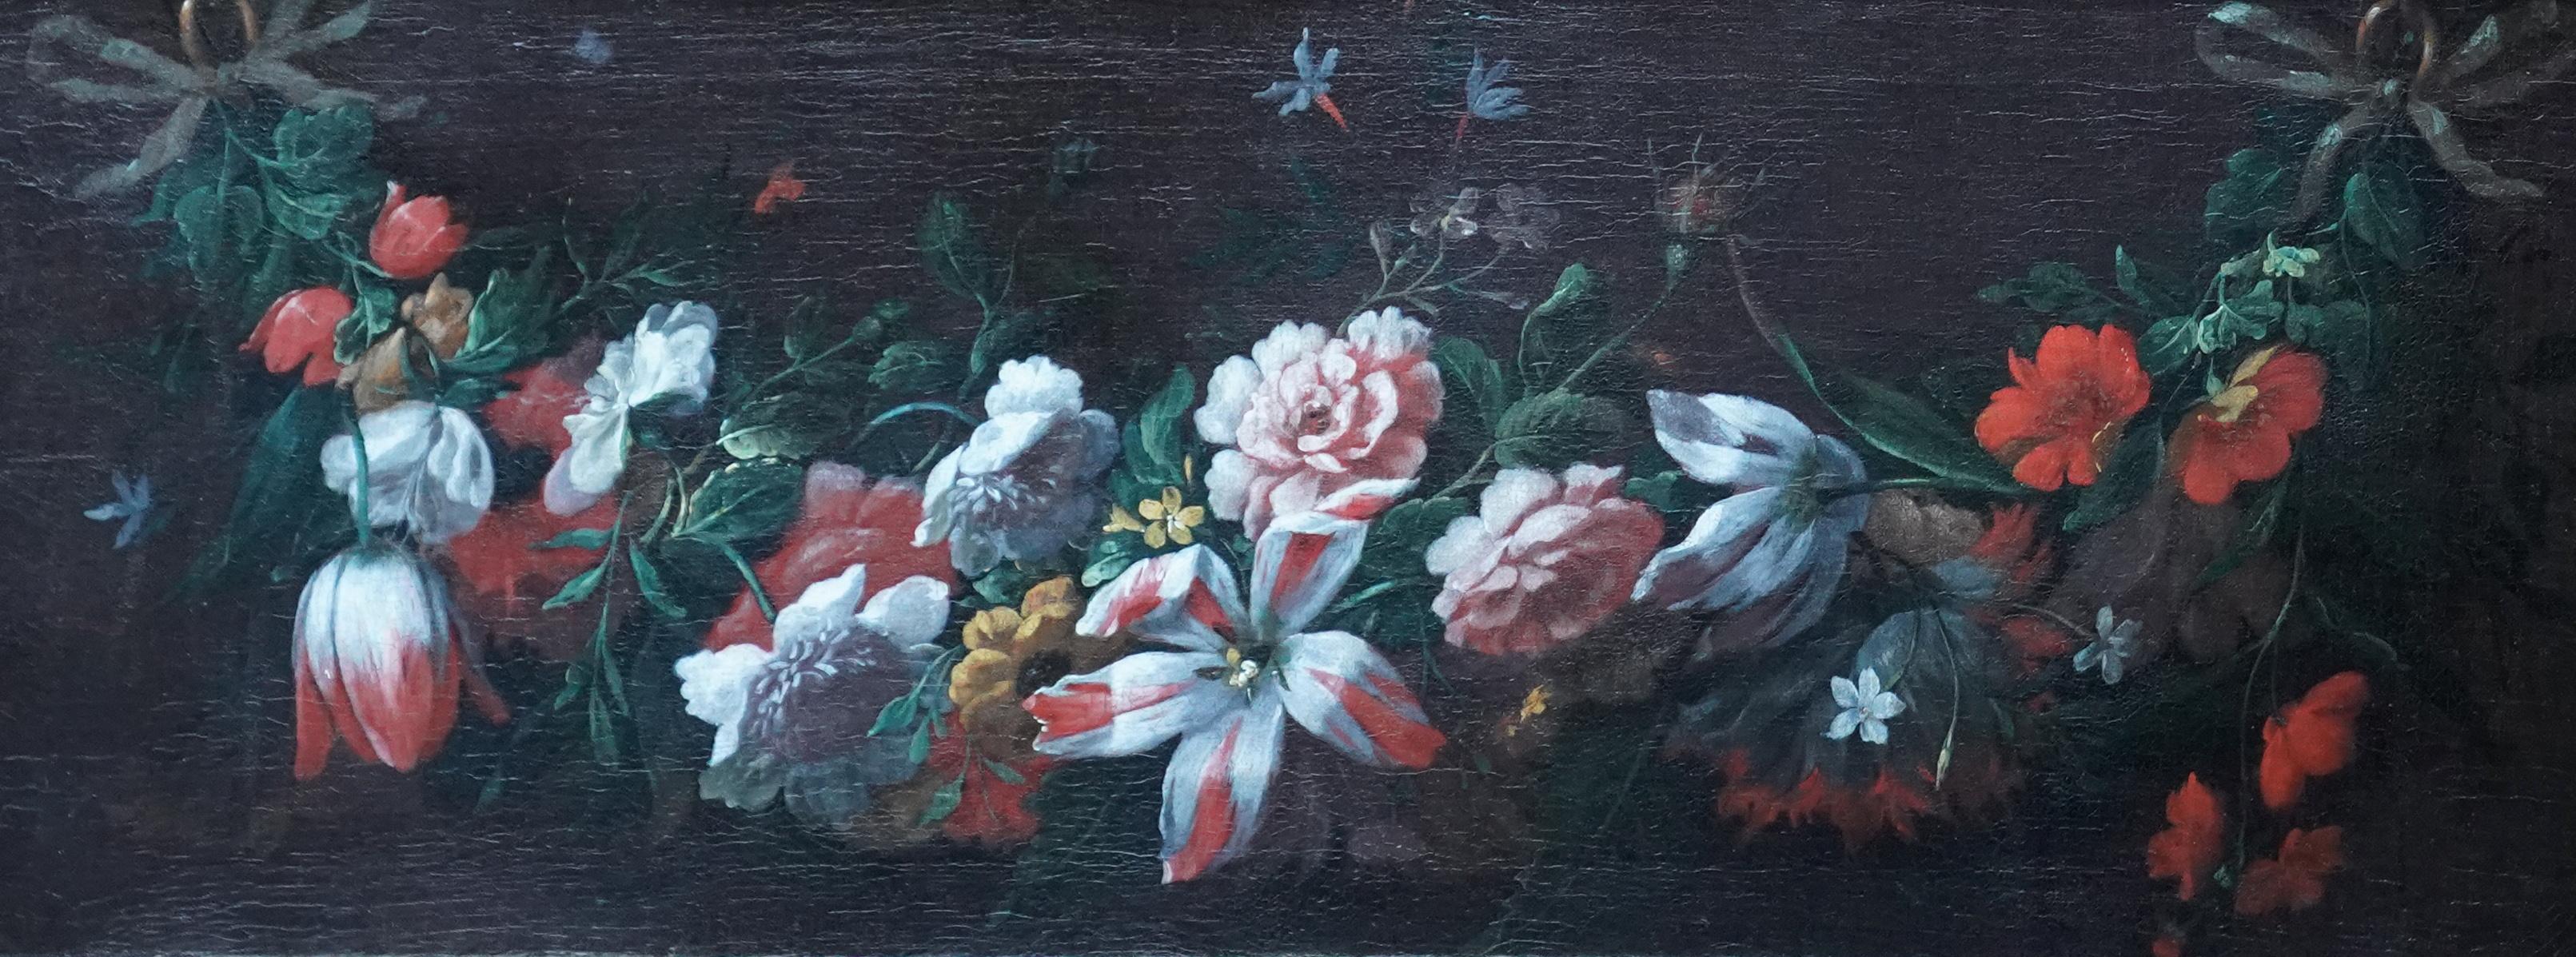 Blumenstrauß-Stillleben – flämisches Blumengemälde eines alten Meisters, 18. Jahrhunderts – Painting von Pieter Casteels III